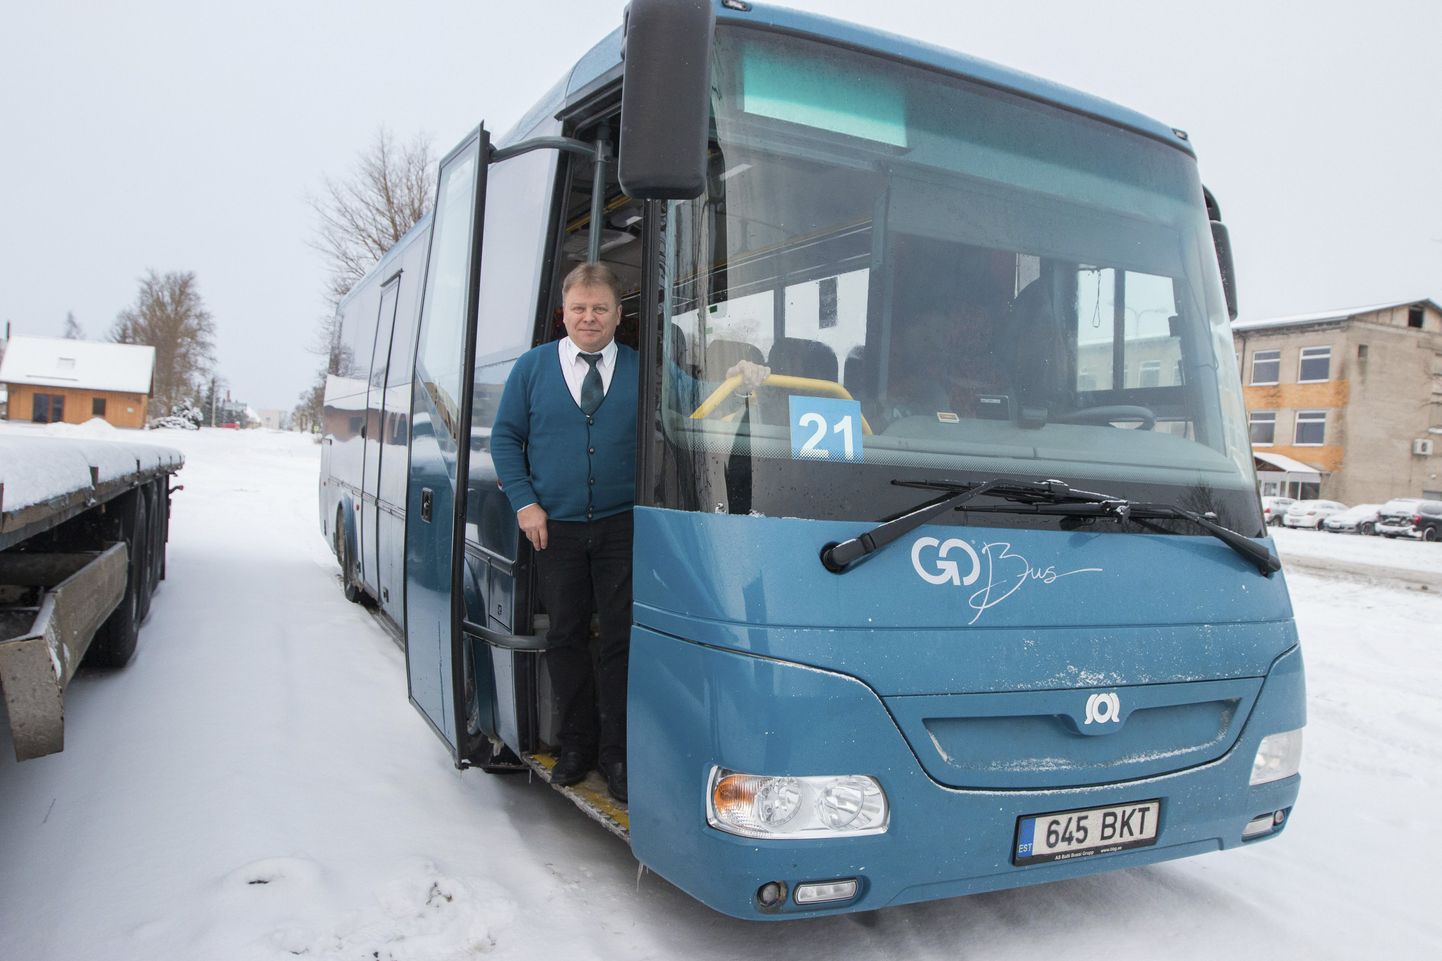 Go Bus Rakvere bussijuht Artur Lillepea on muhe mees, kes armastab oma tööd jäägitult.  See toob ka sära silmi ja naeru põske.